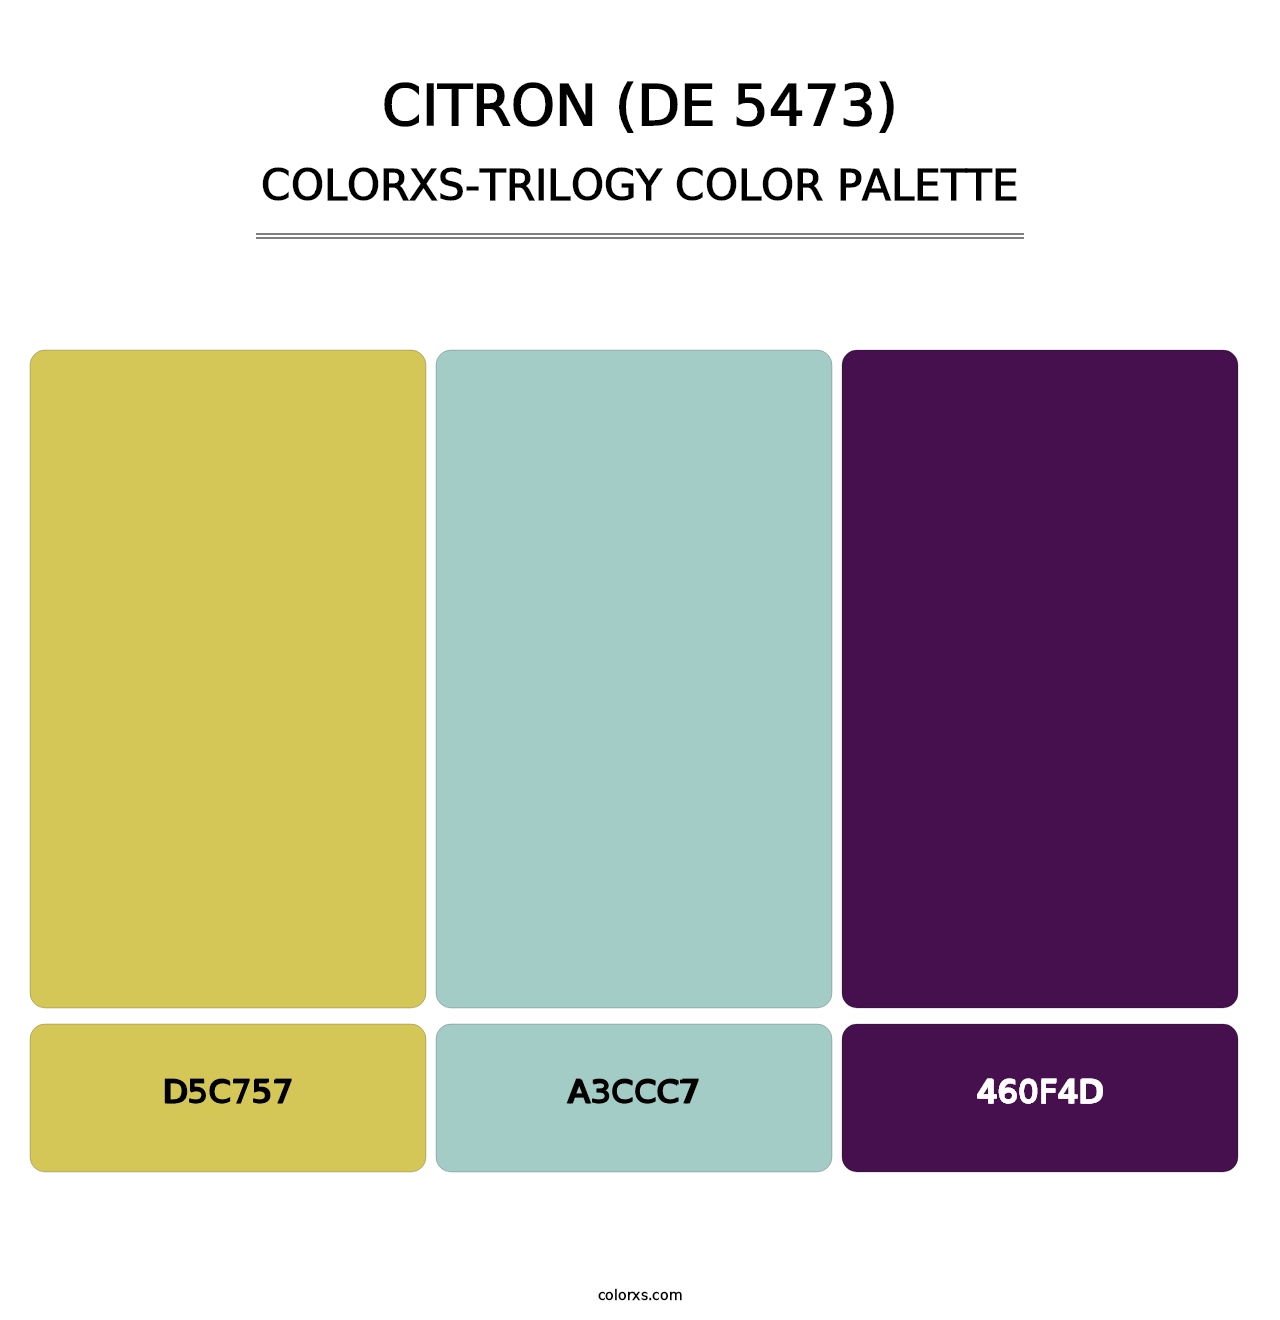 Citron (DE 5473) - Colorxs Trilogy Palette